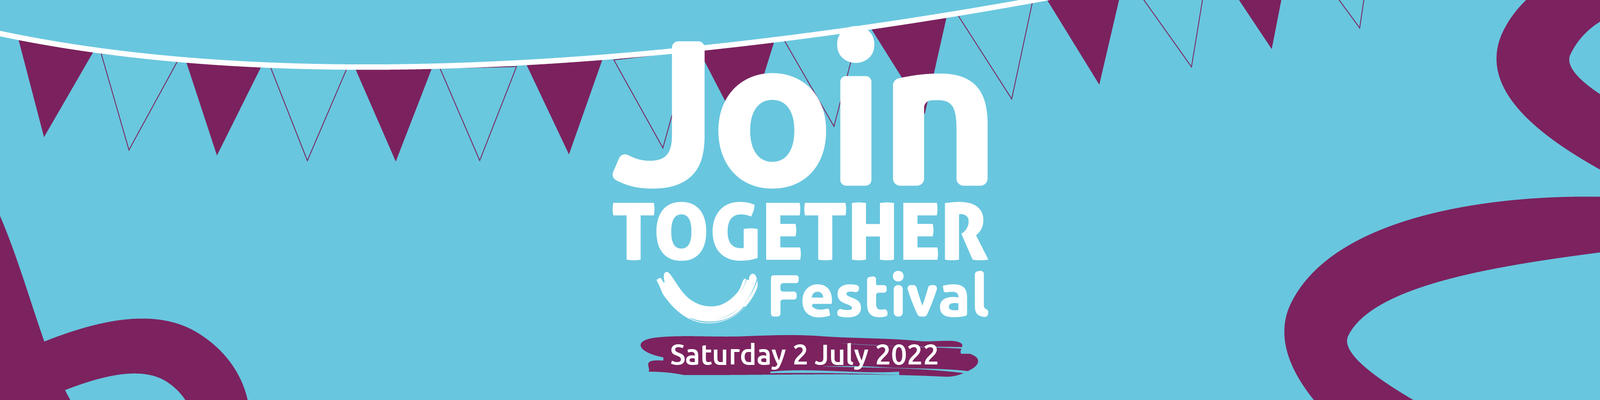 Join Together Festival banner